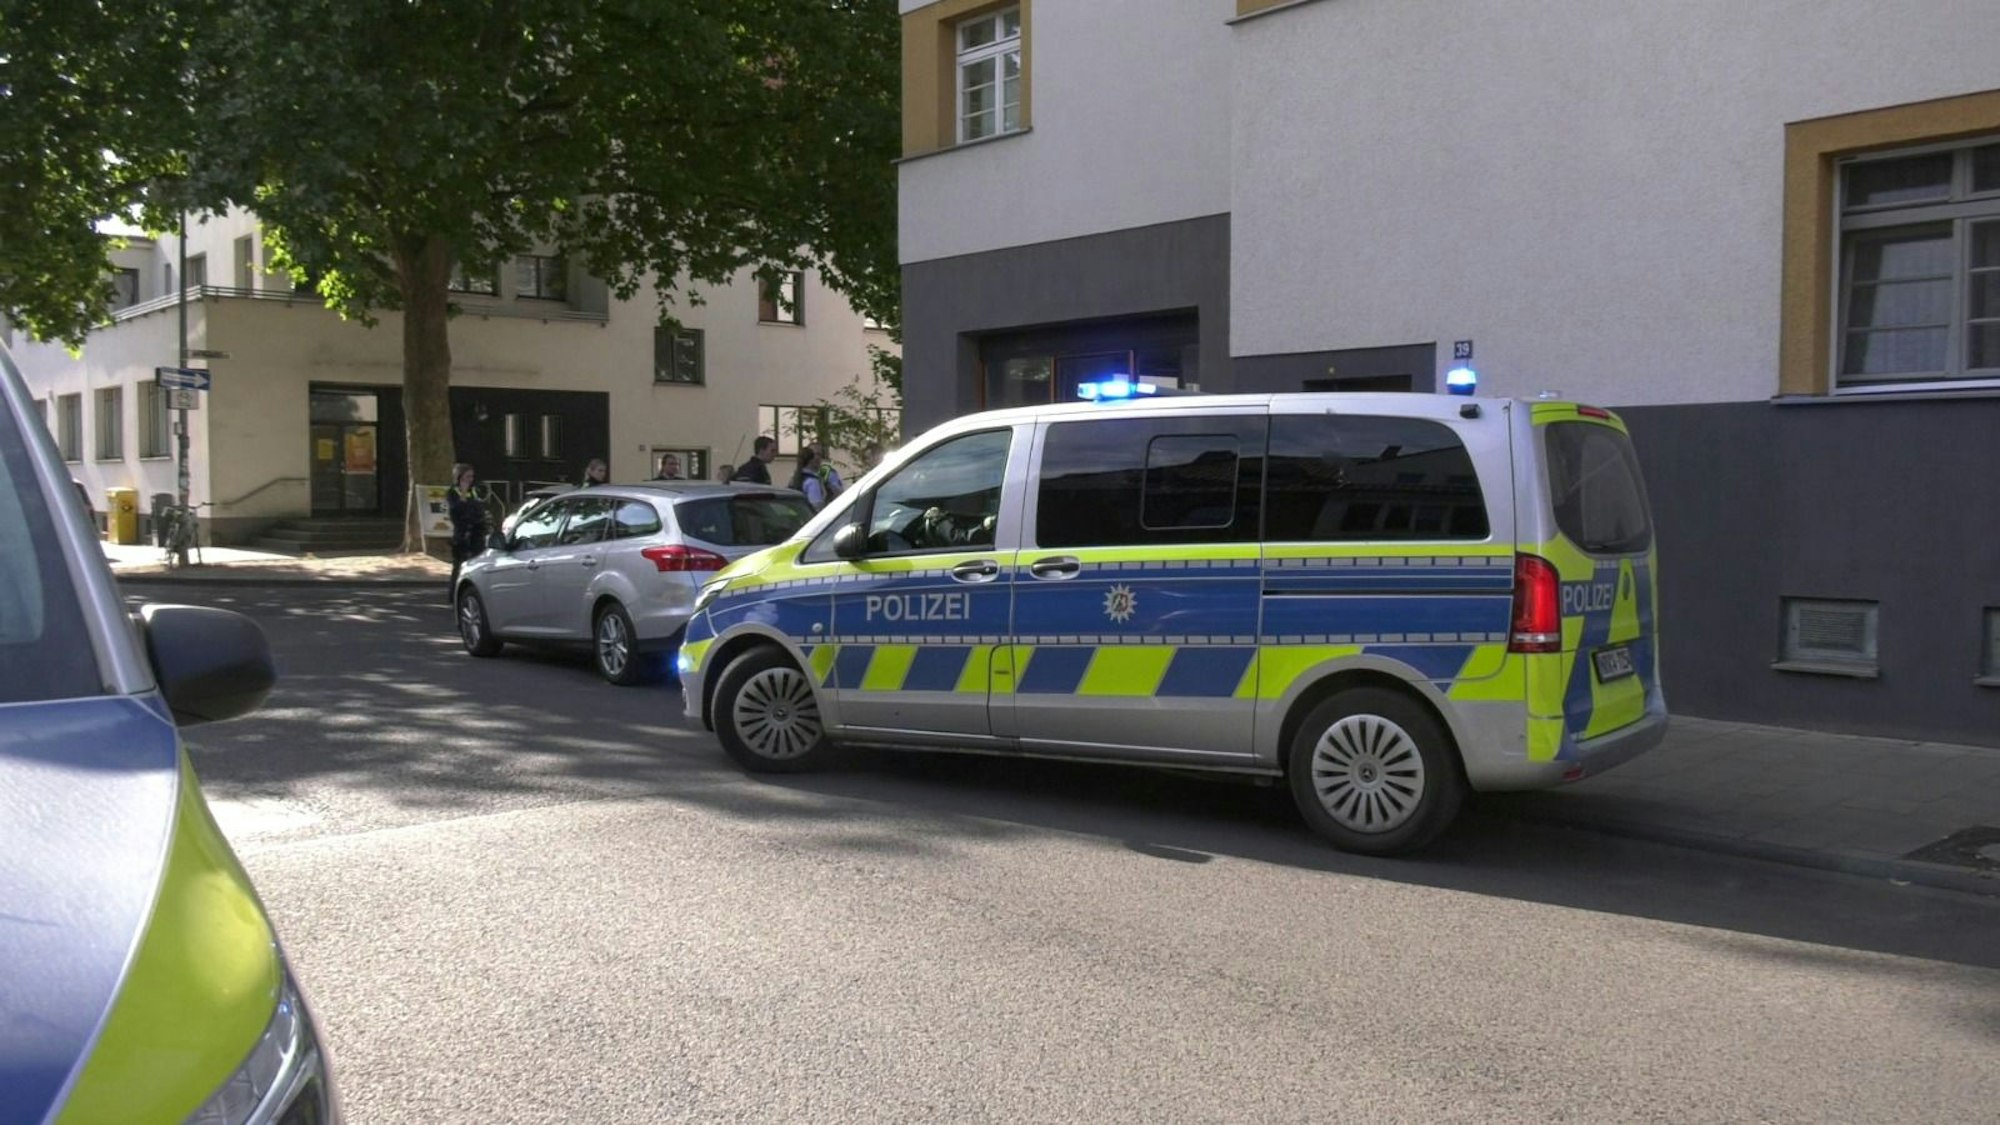 Zwei Polizeifahrzeuge parken in einer Straße.